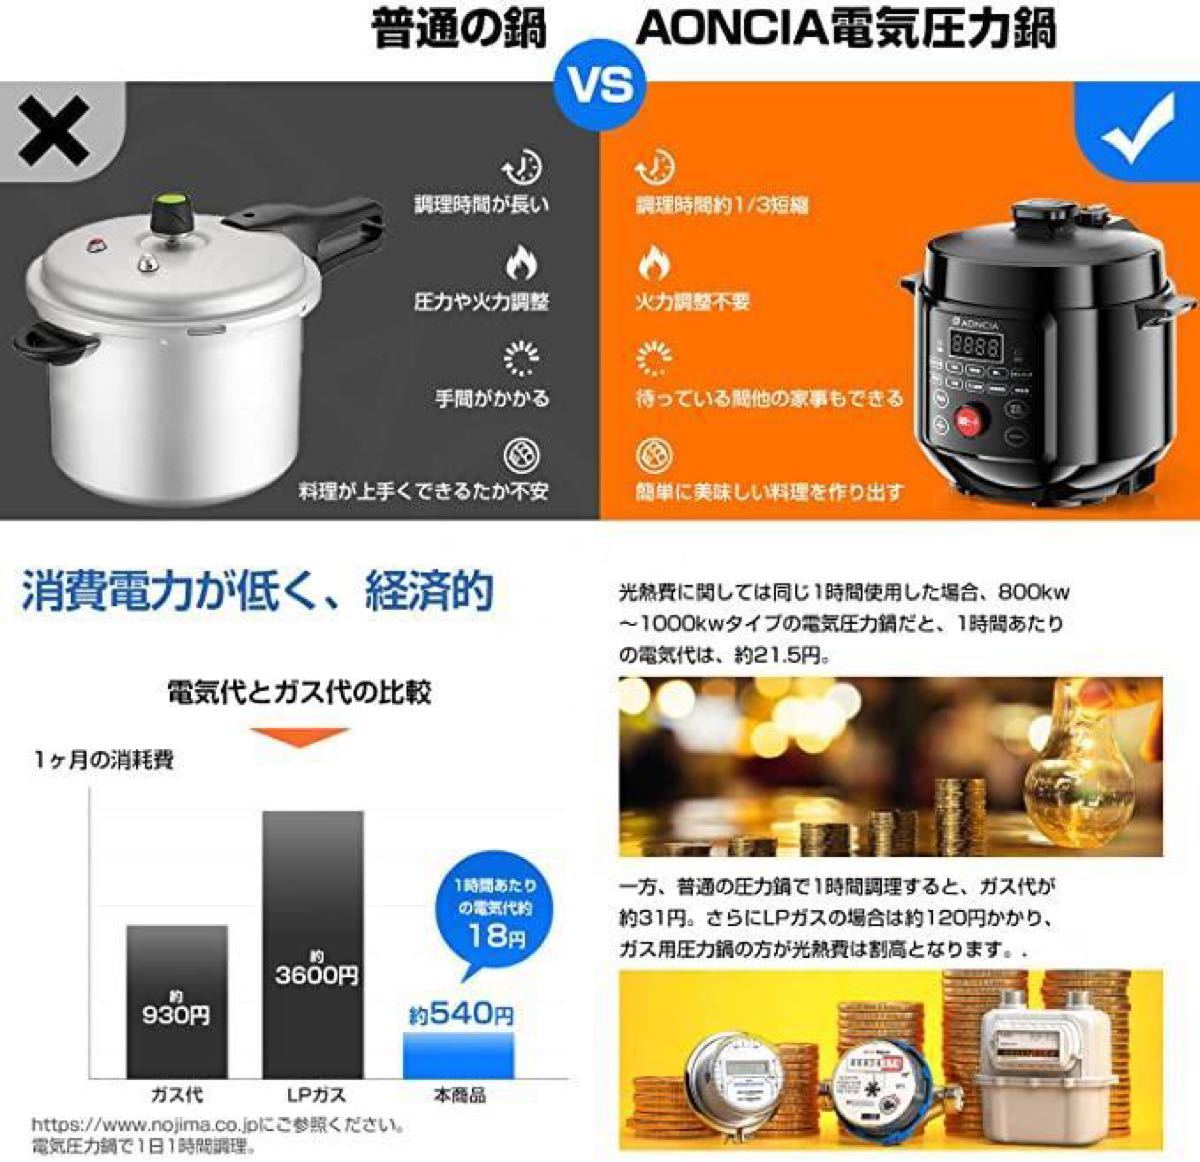 【新品未使用】電気圧力鍋 3L 圧力鍋 炊飯器 一人暮らし 時短 予約